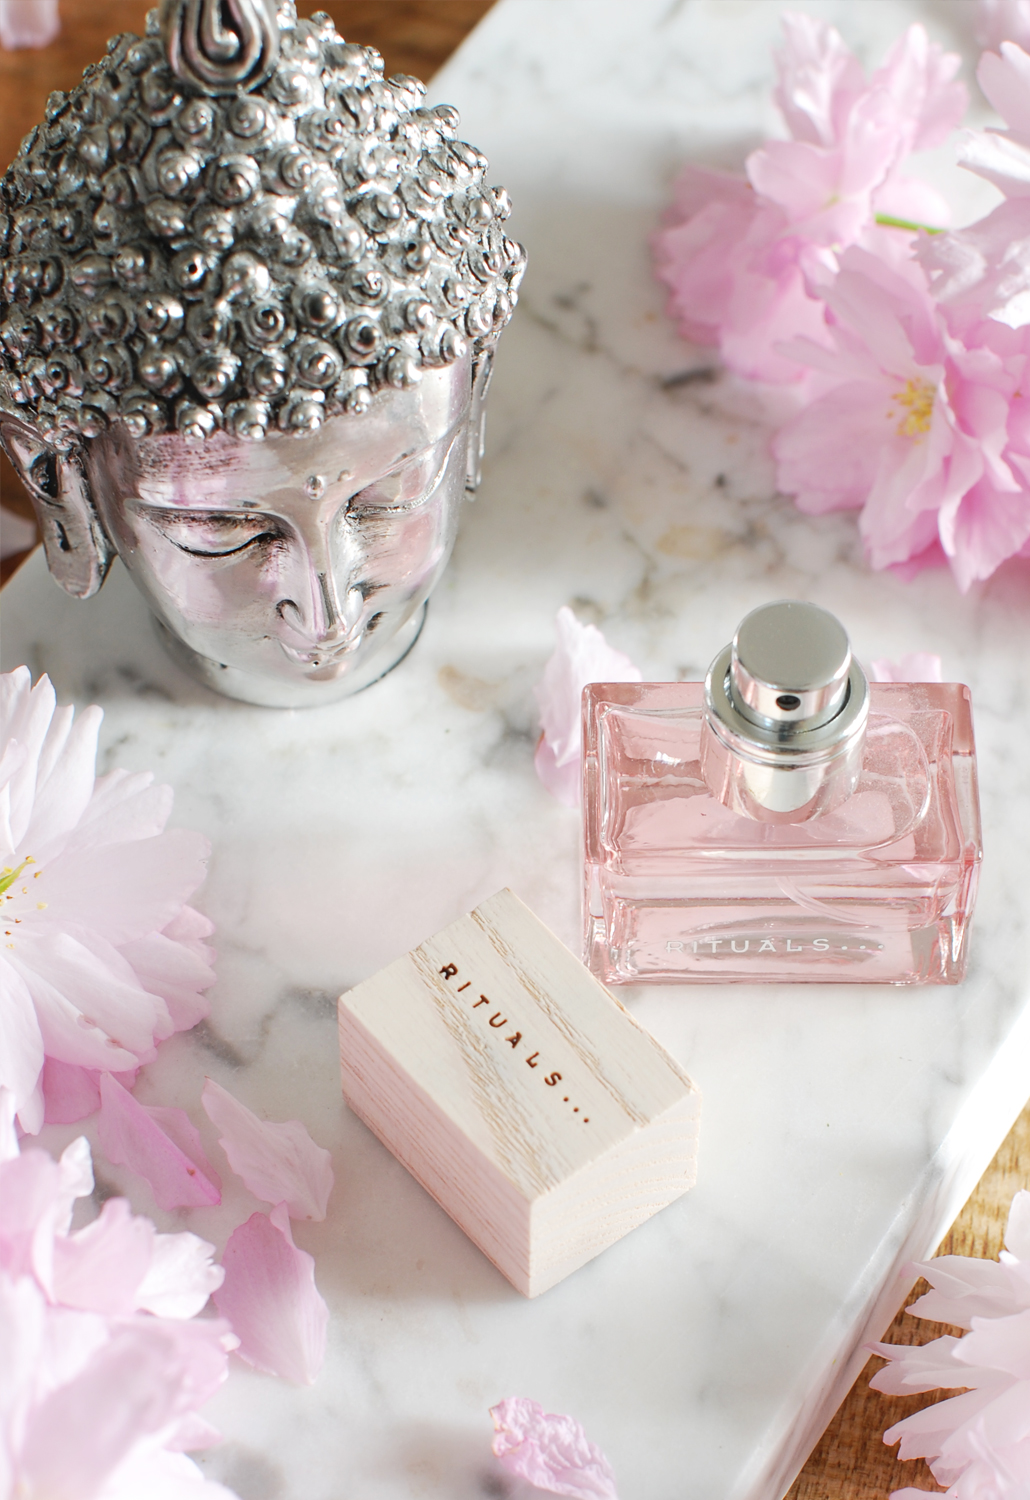 Rituals No. 23 Magnolia & pink pepper eau de parfum